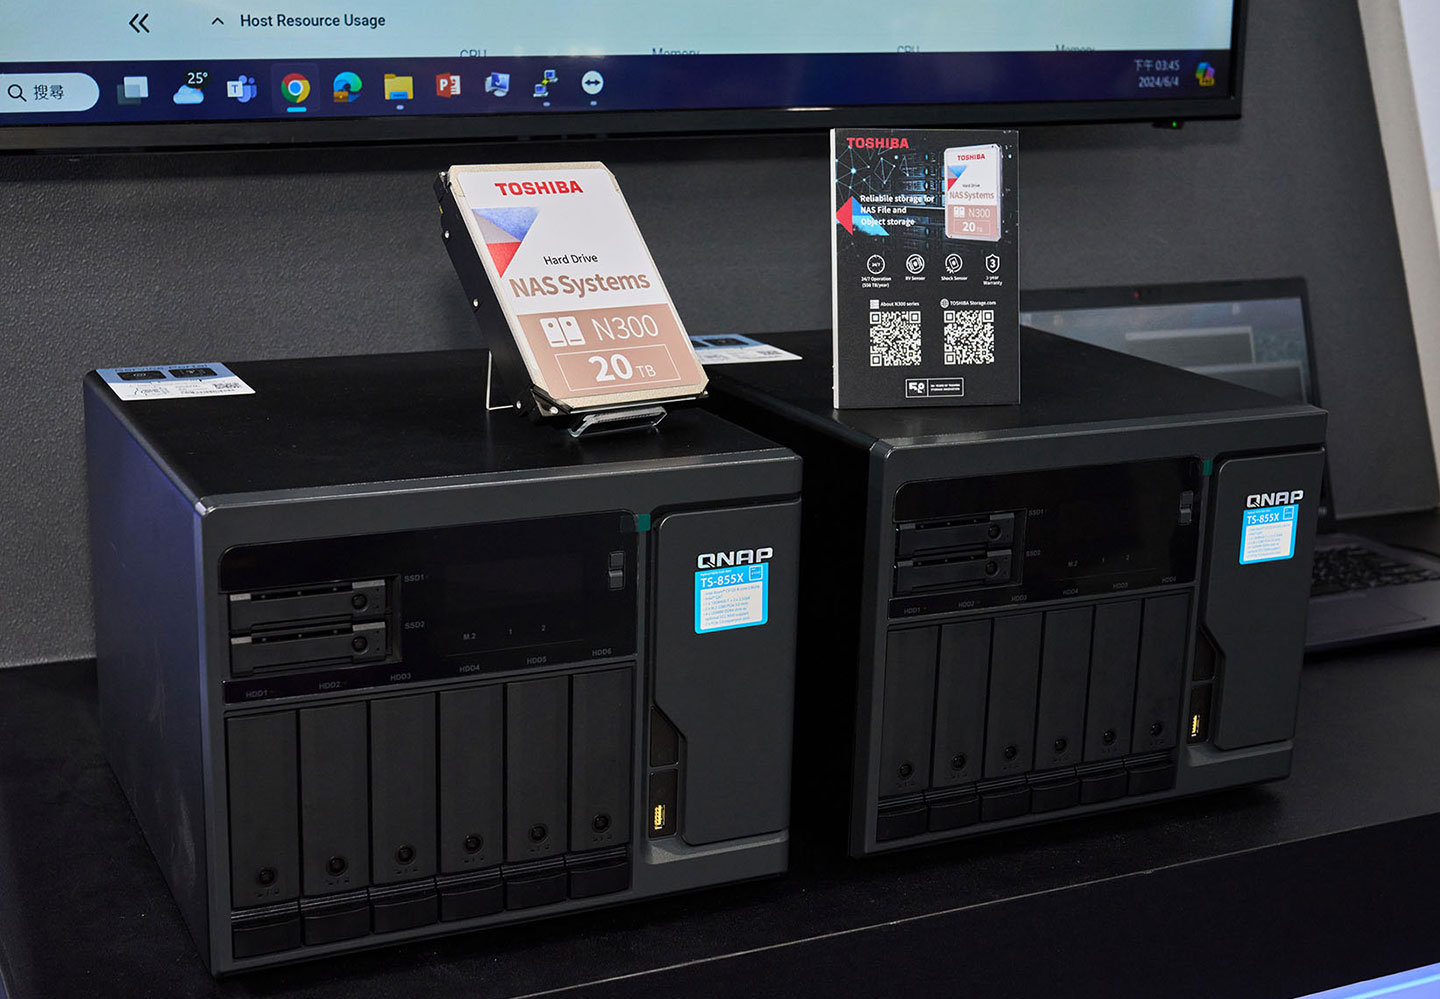 適用工作室、小規模企使用的 QNAP TS-855X 也能配 Toshiba N300 系列 NAS 專用硬碟滿足協作儲所需。